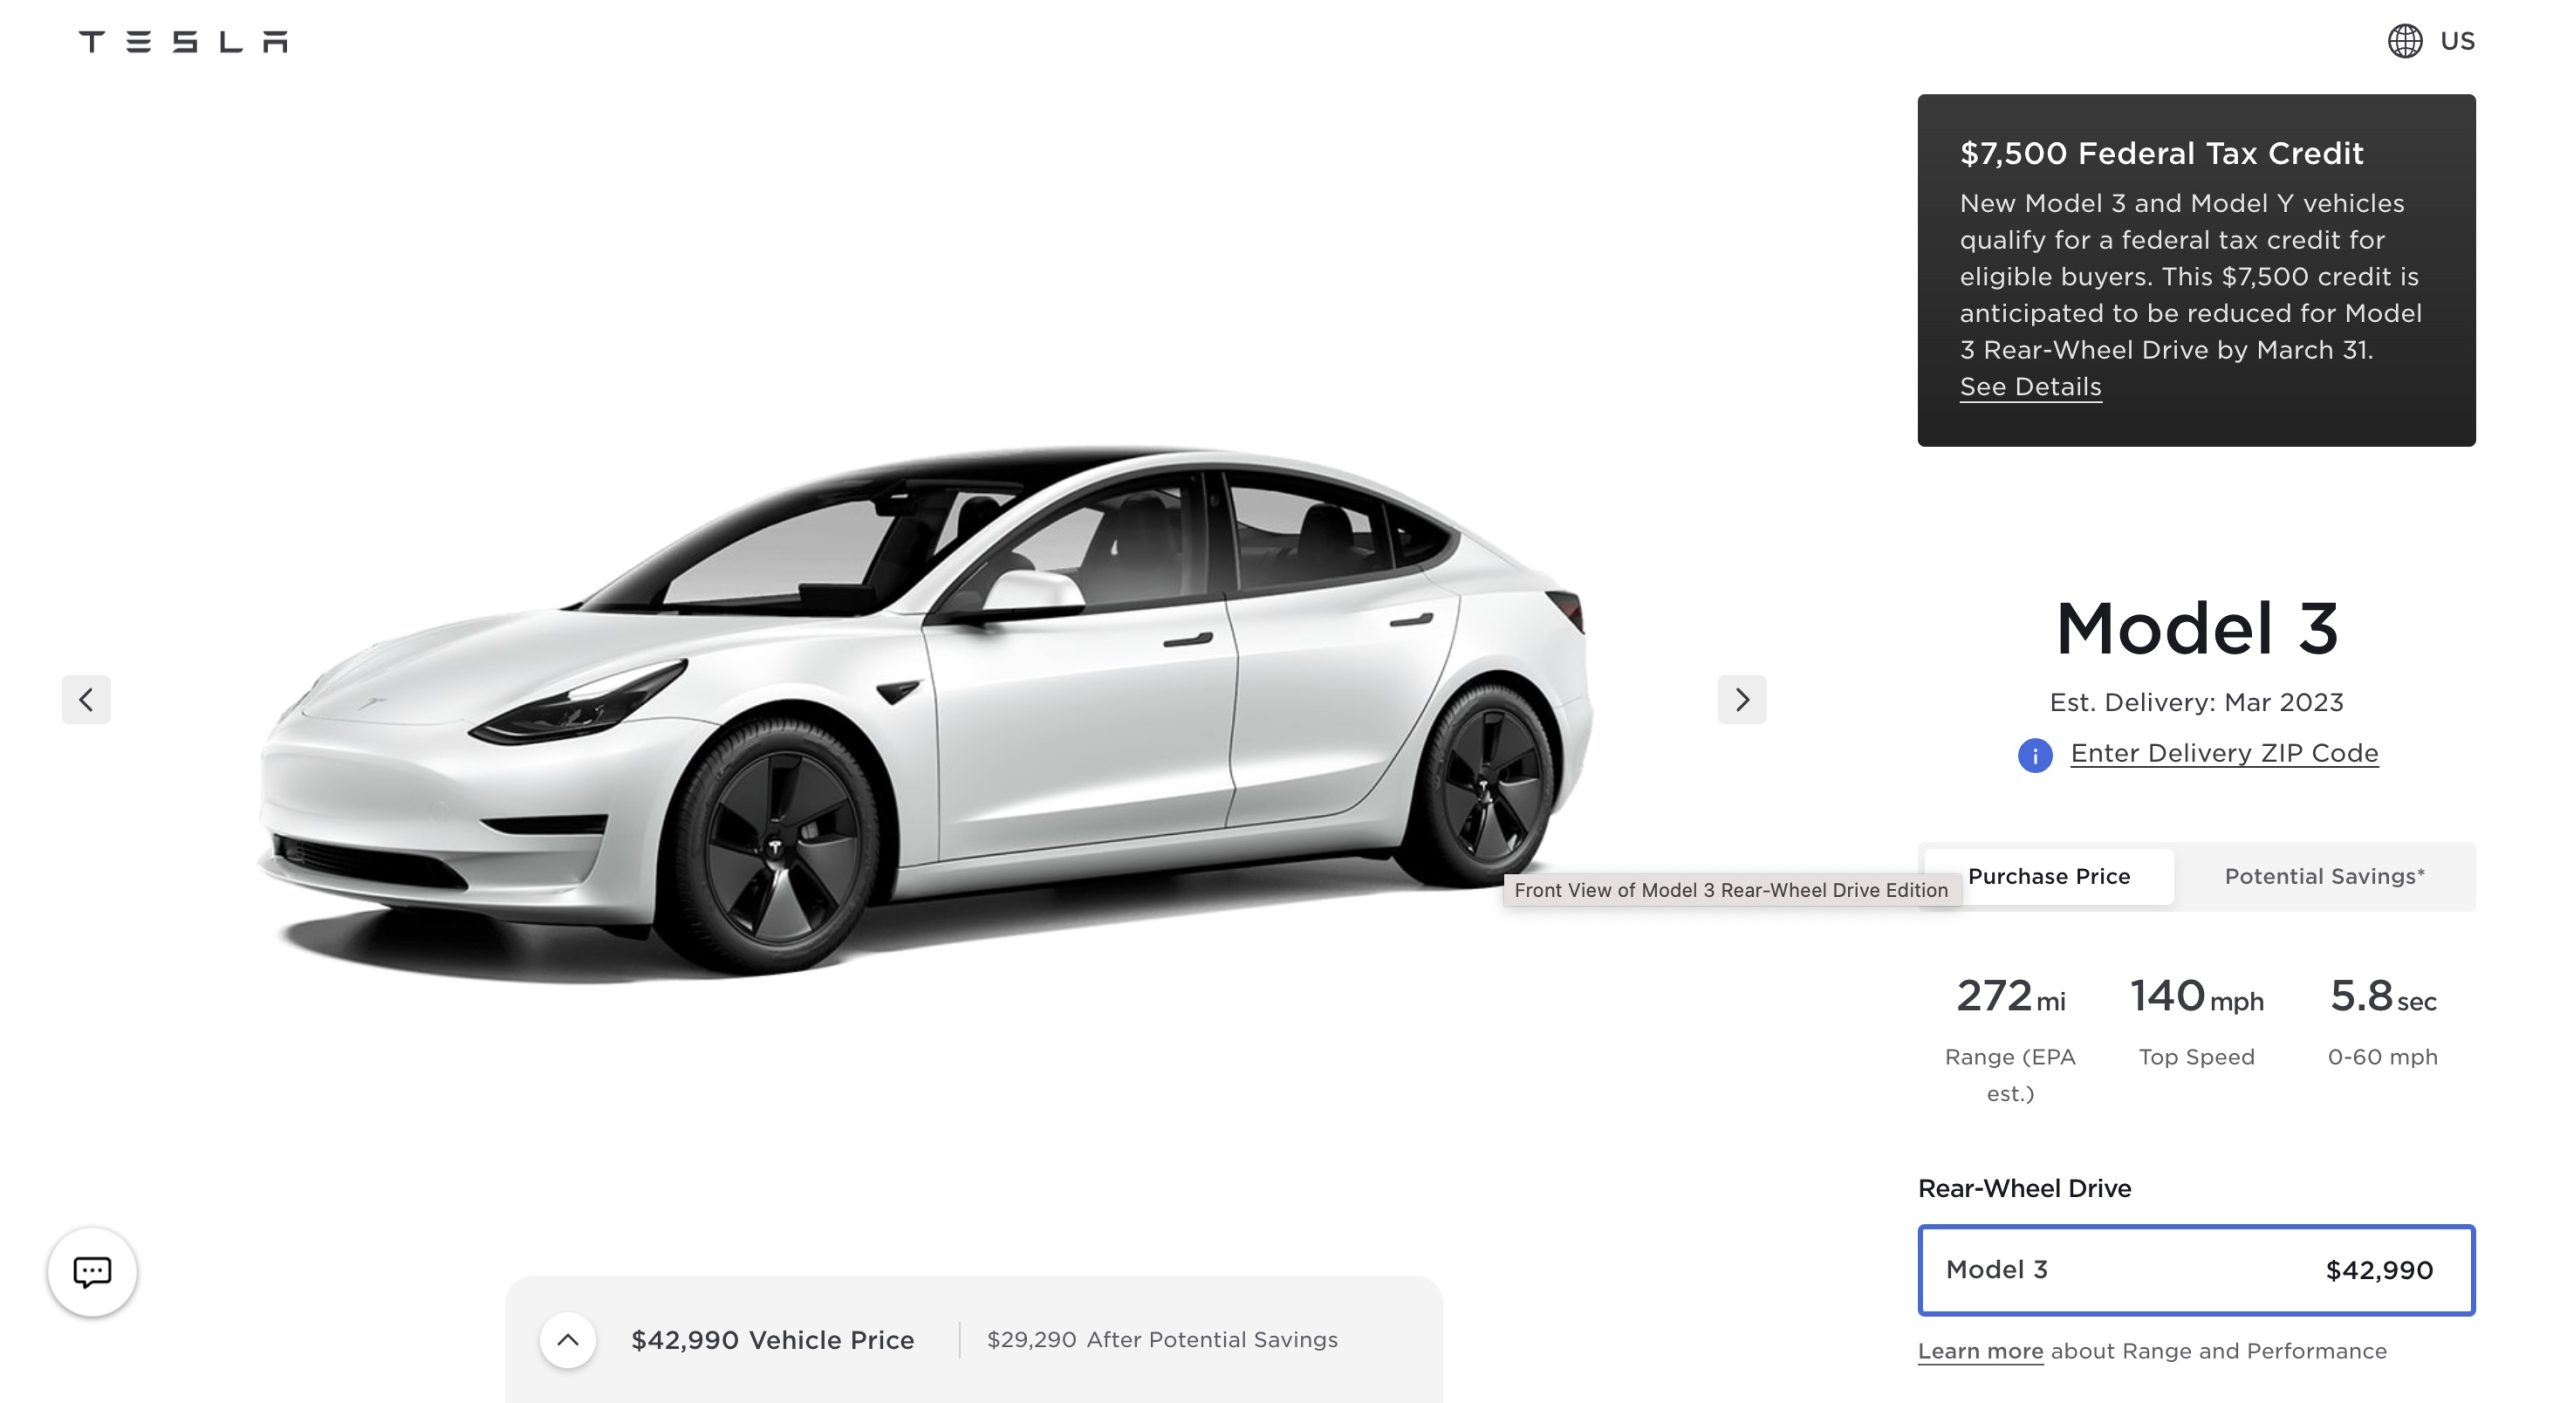 Tesla Model 3 RWD’s $7,500 EV Tax Credits will be reduced